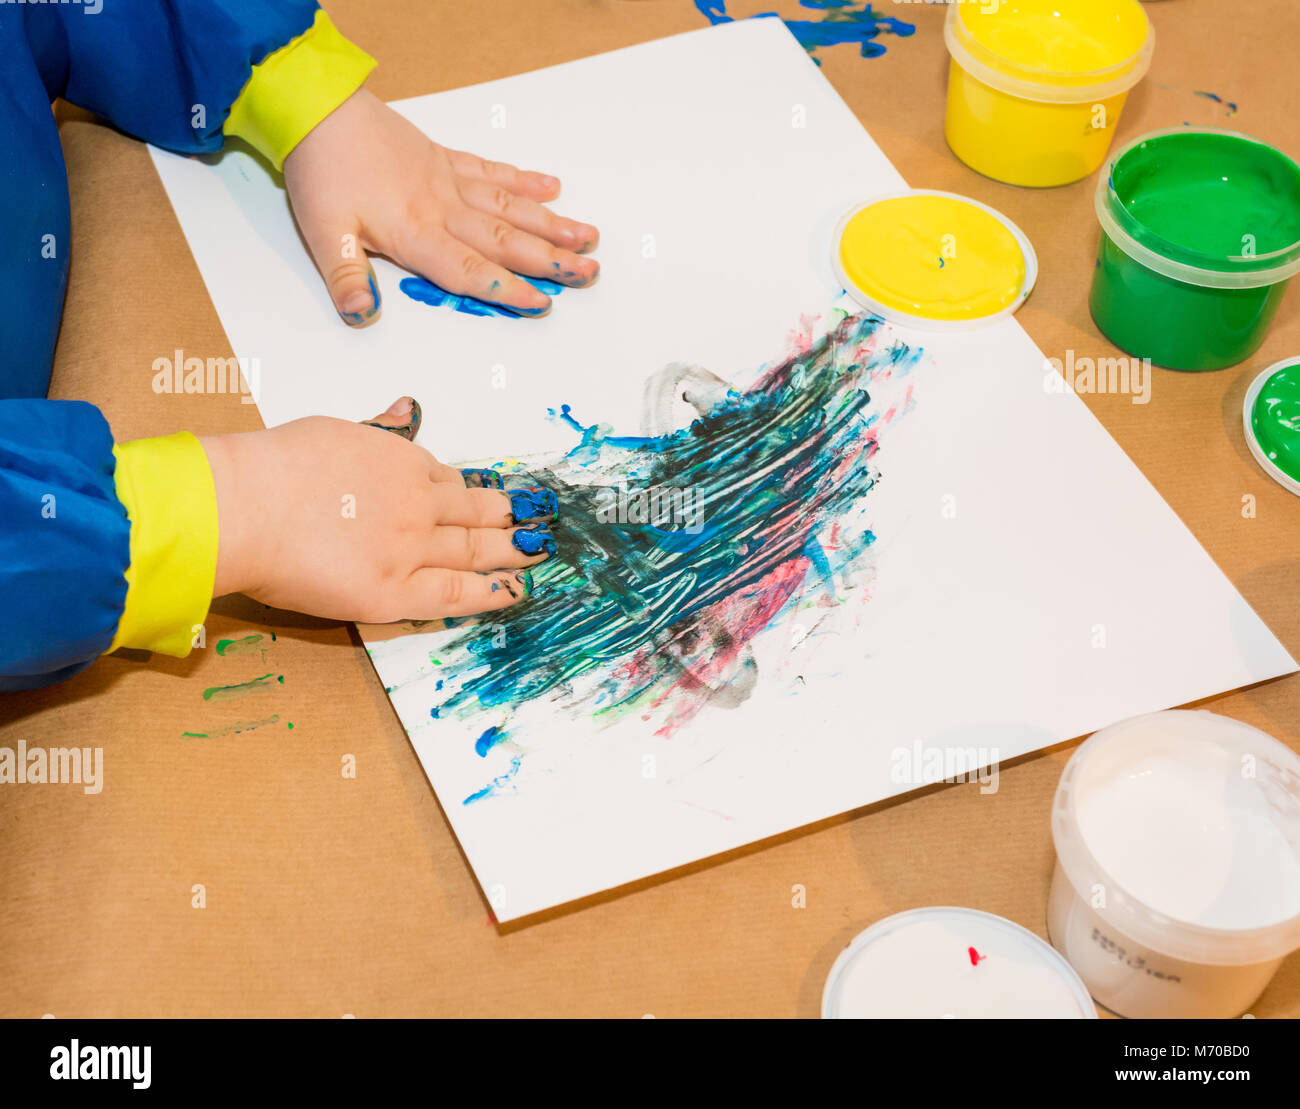 Les mains de l'enfant peint dans les peintures colorées. L'éducation, l'école, la créativité et la peinture concept. Un flou flou Banque D'Images